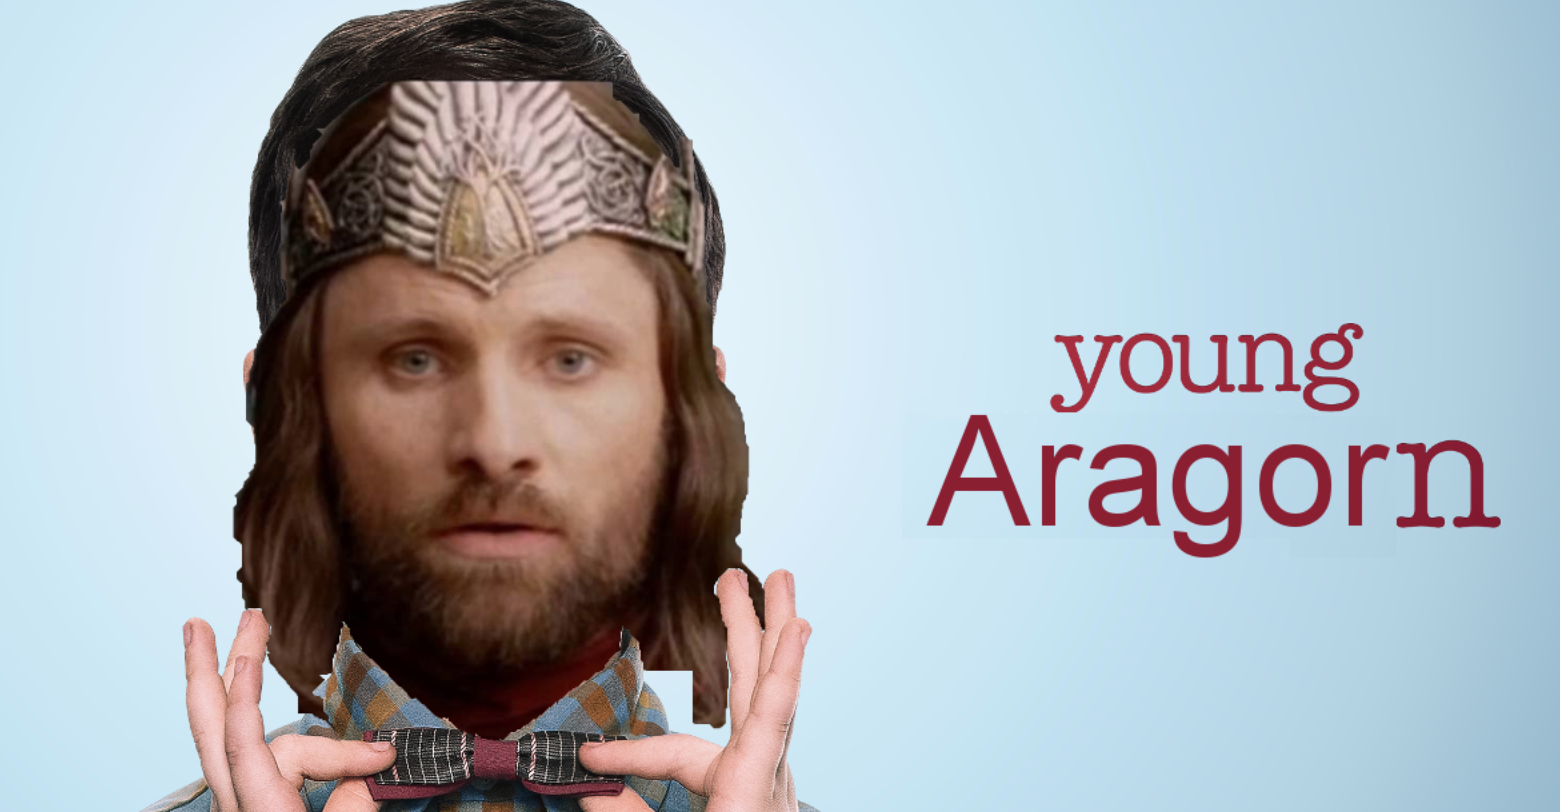 La serie de El señor de los anillos se centrará en el joven Aragorn